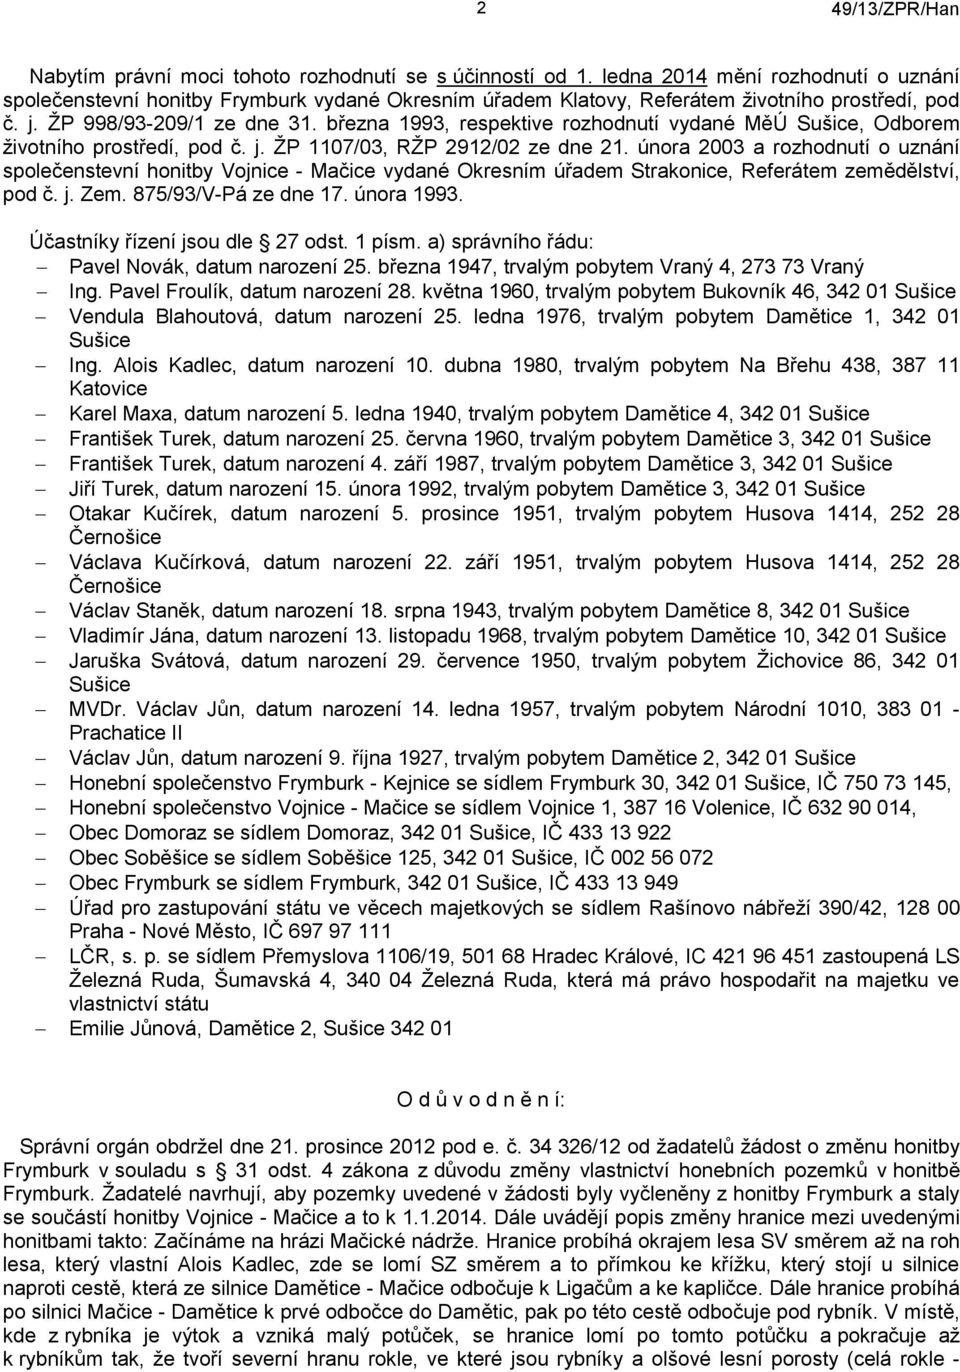 února 2003 a rozhodnutí o uznání společenstevní honitby Vojnice - Mačice vydané Okresním úřadem Strakonice, Referátem zemědělství, pod č. j. Zem. 875/93/V-Pá ze dne 17. února 1993.